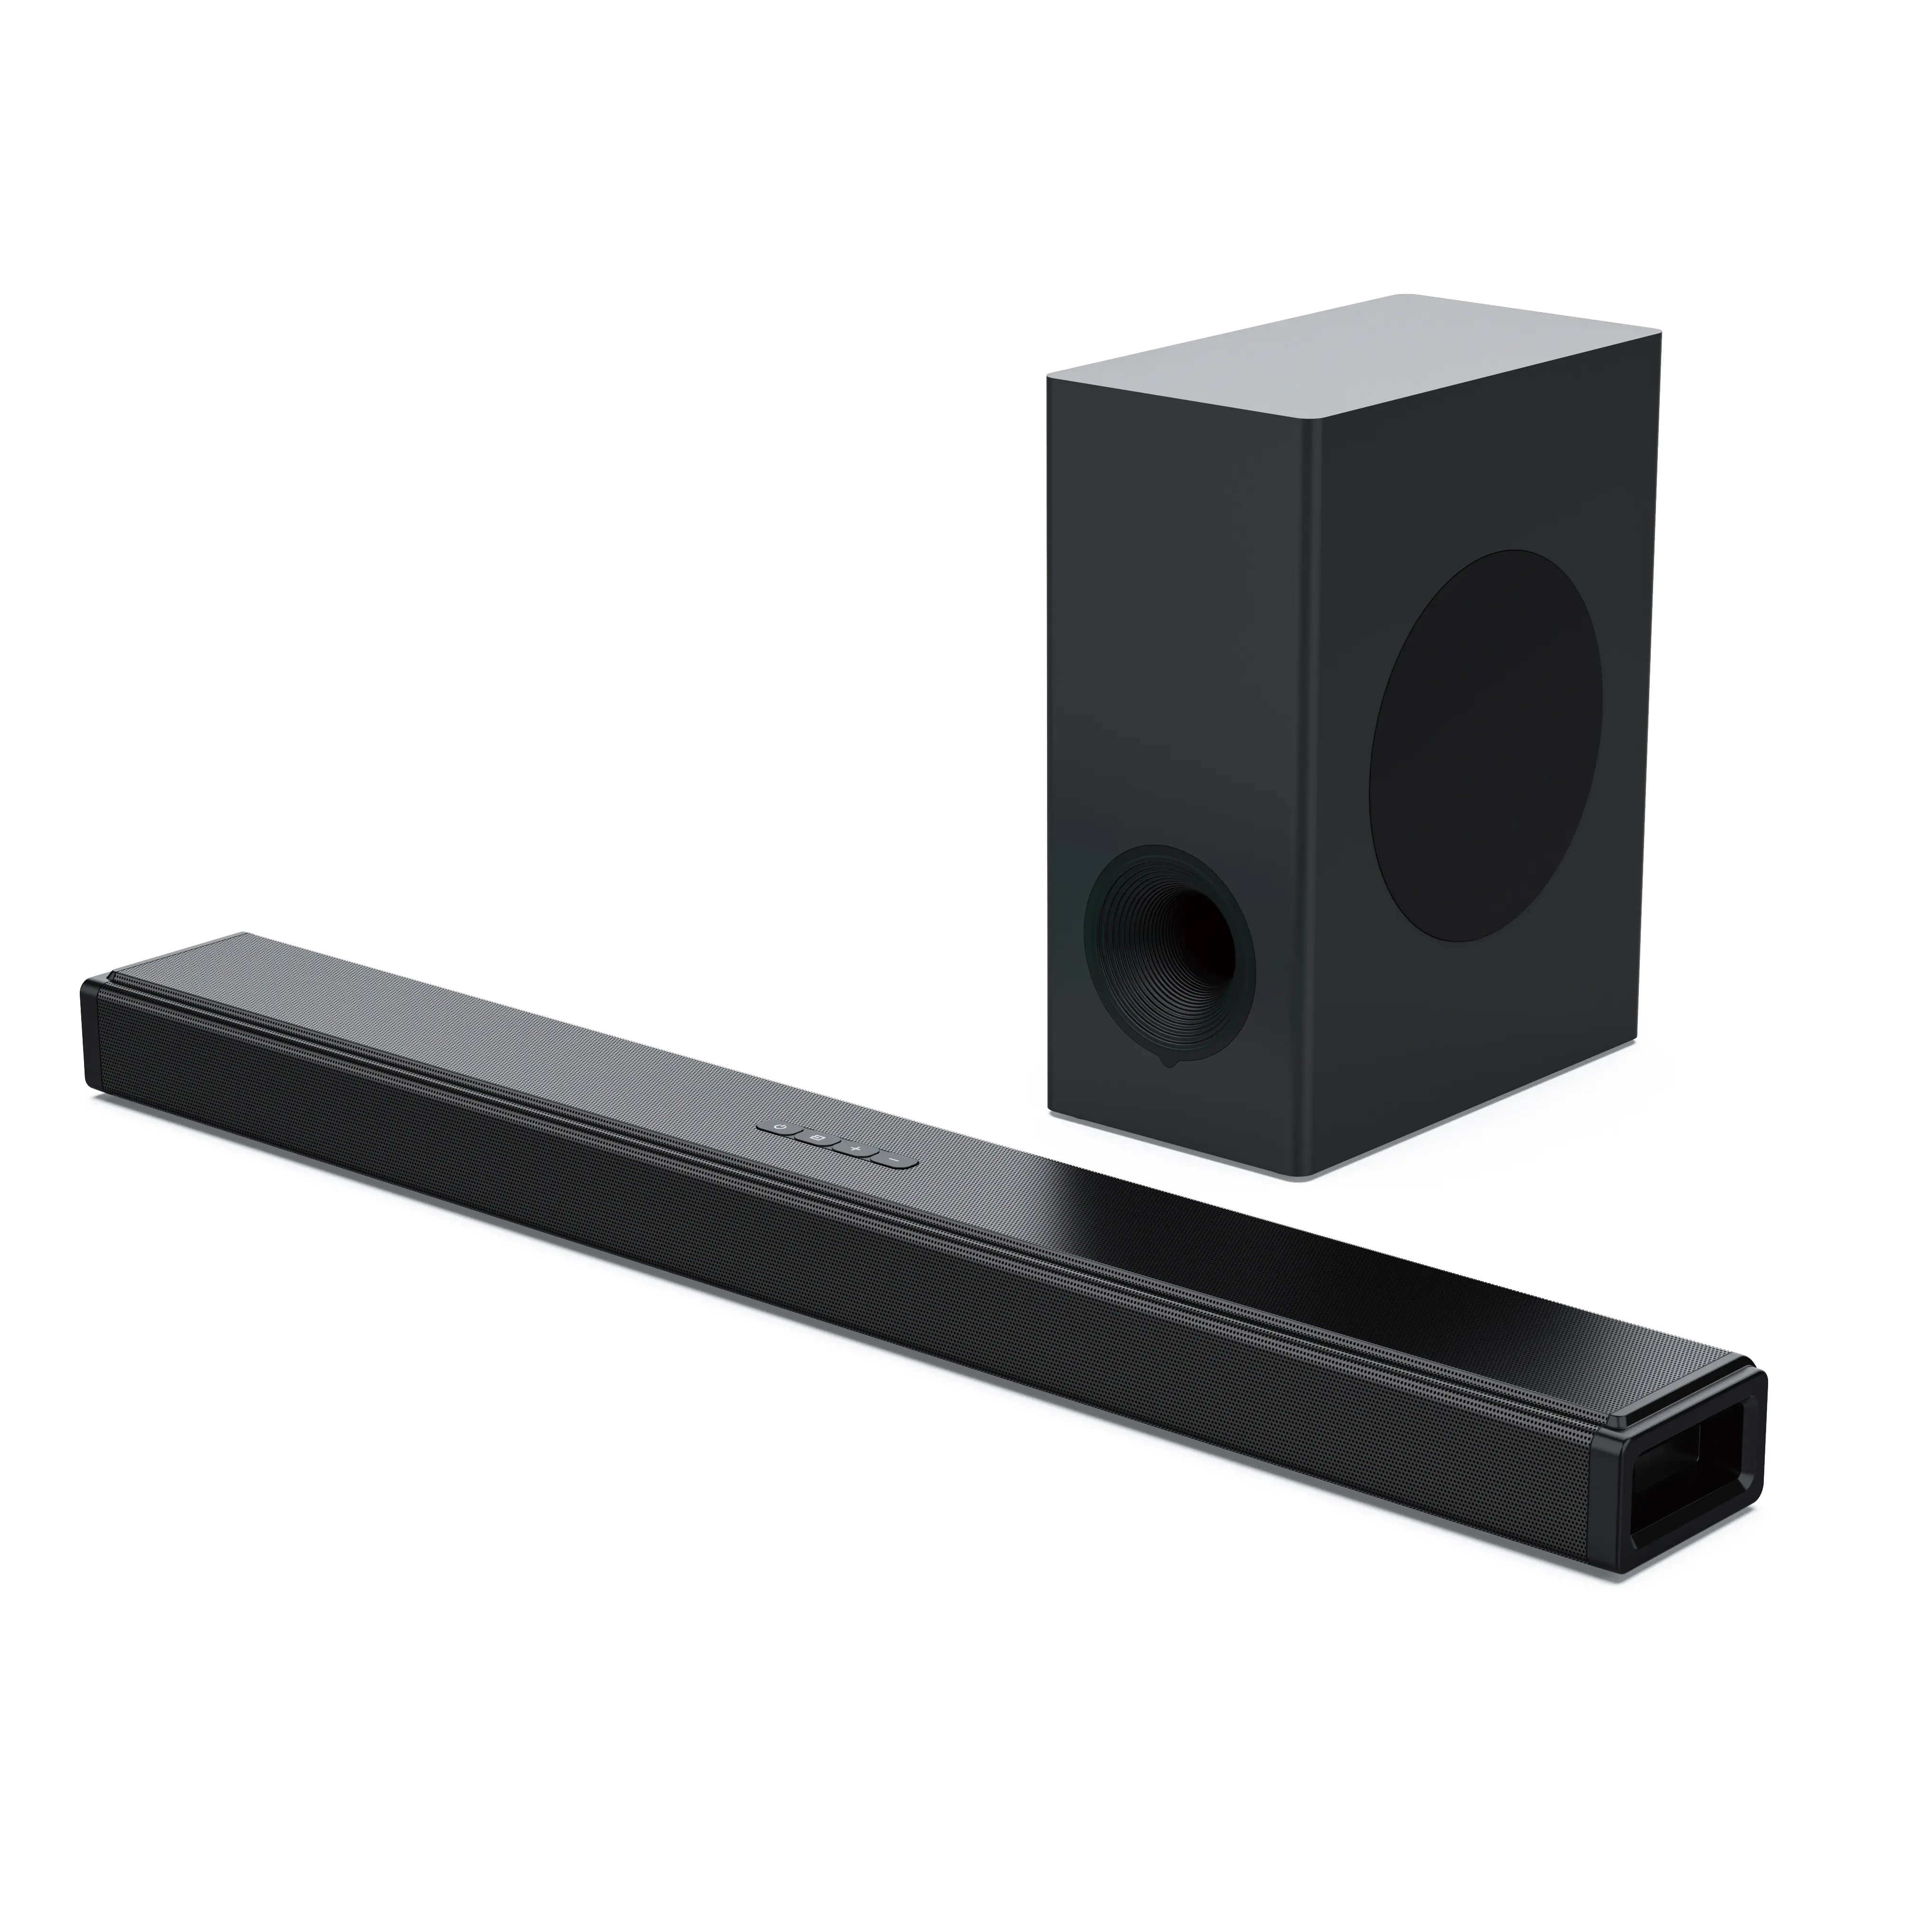 Âm thanh máy nghe nhạc loa soundbar loa siêu trầm TV âm thanh không dây màu xanh đen 2.1 Soundbar Atmos rạp chiếu phim tại nhà Hệ thống loa không dây